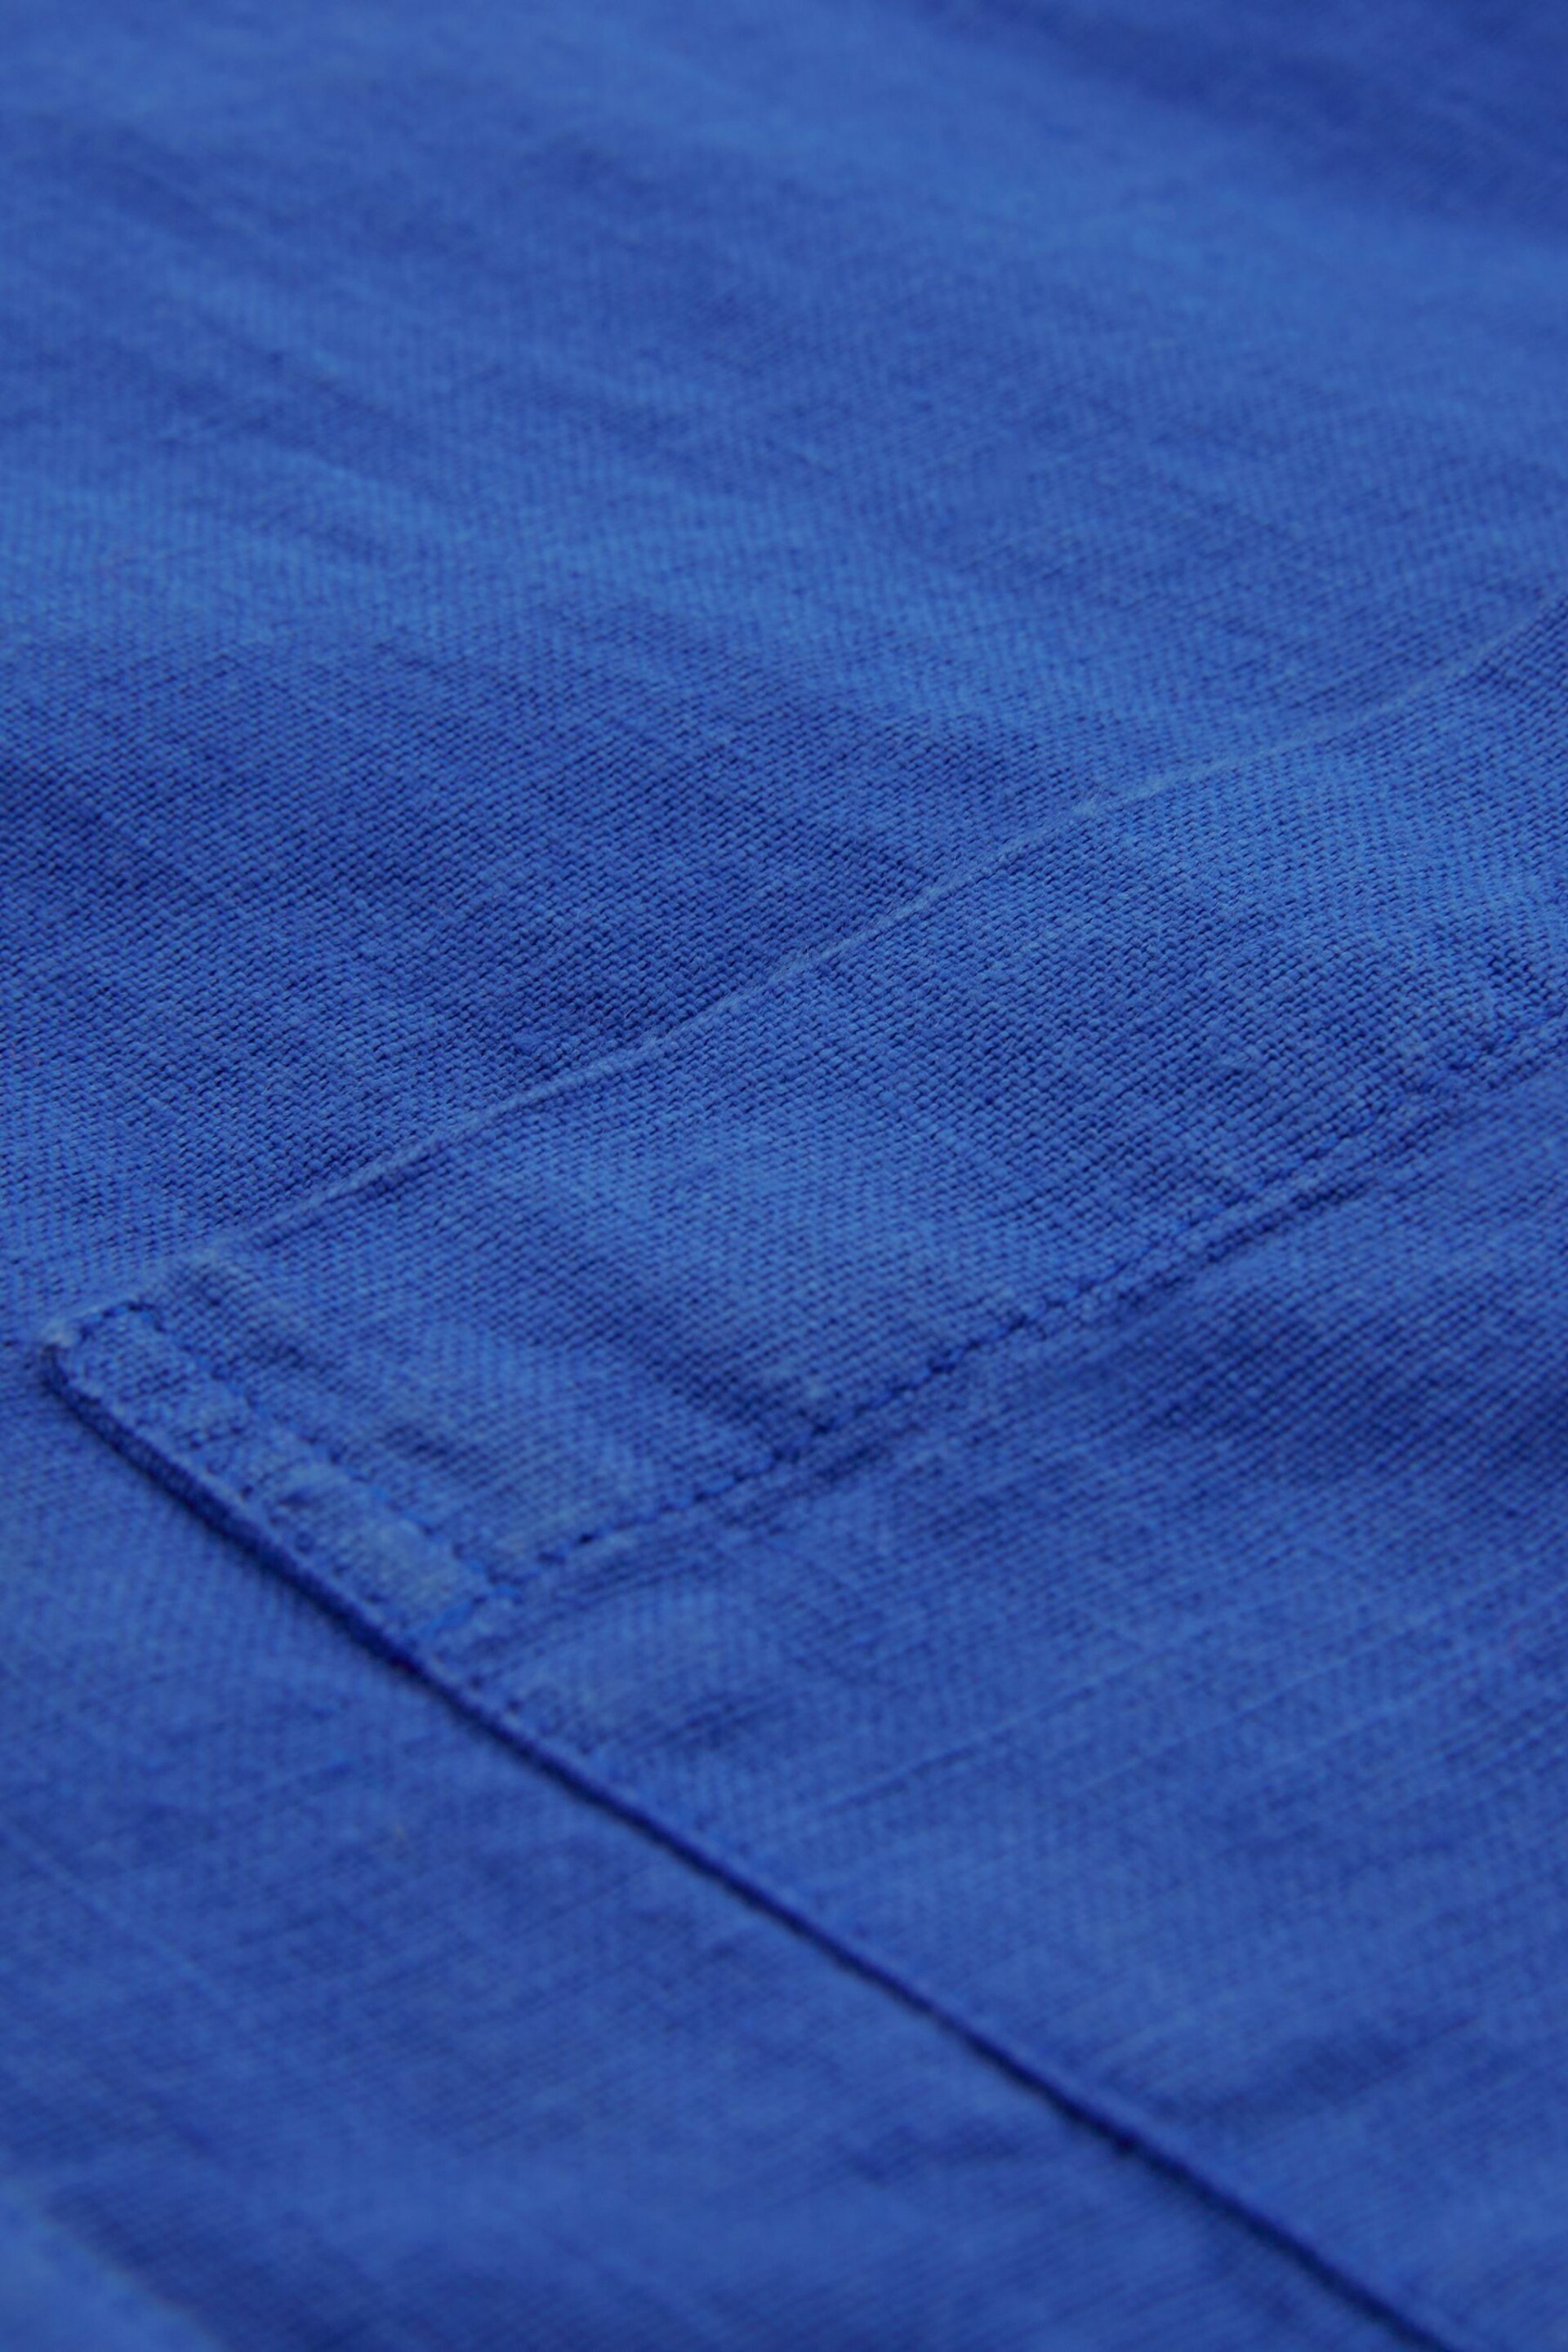 Celtic & Co. Blue Linen Button Through Dress - Image 6 of 7